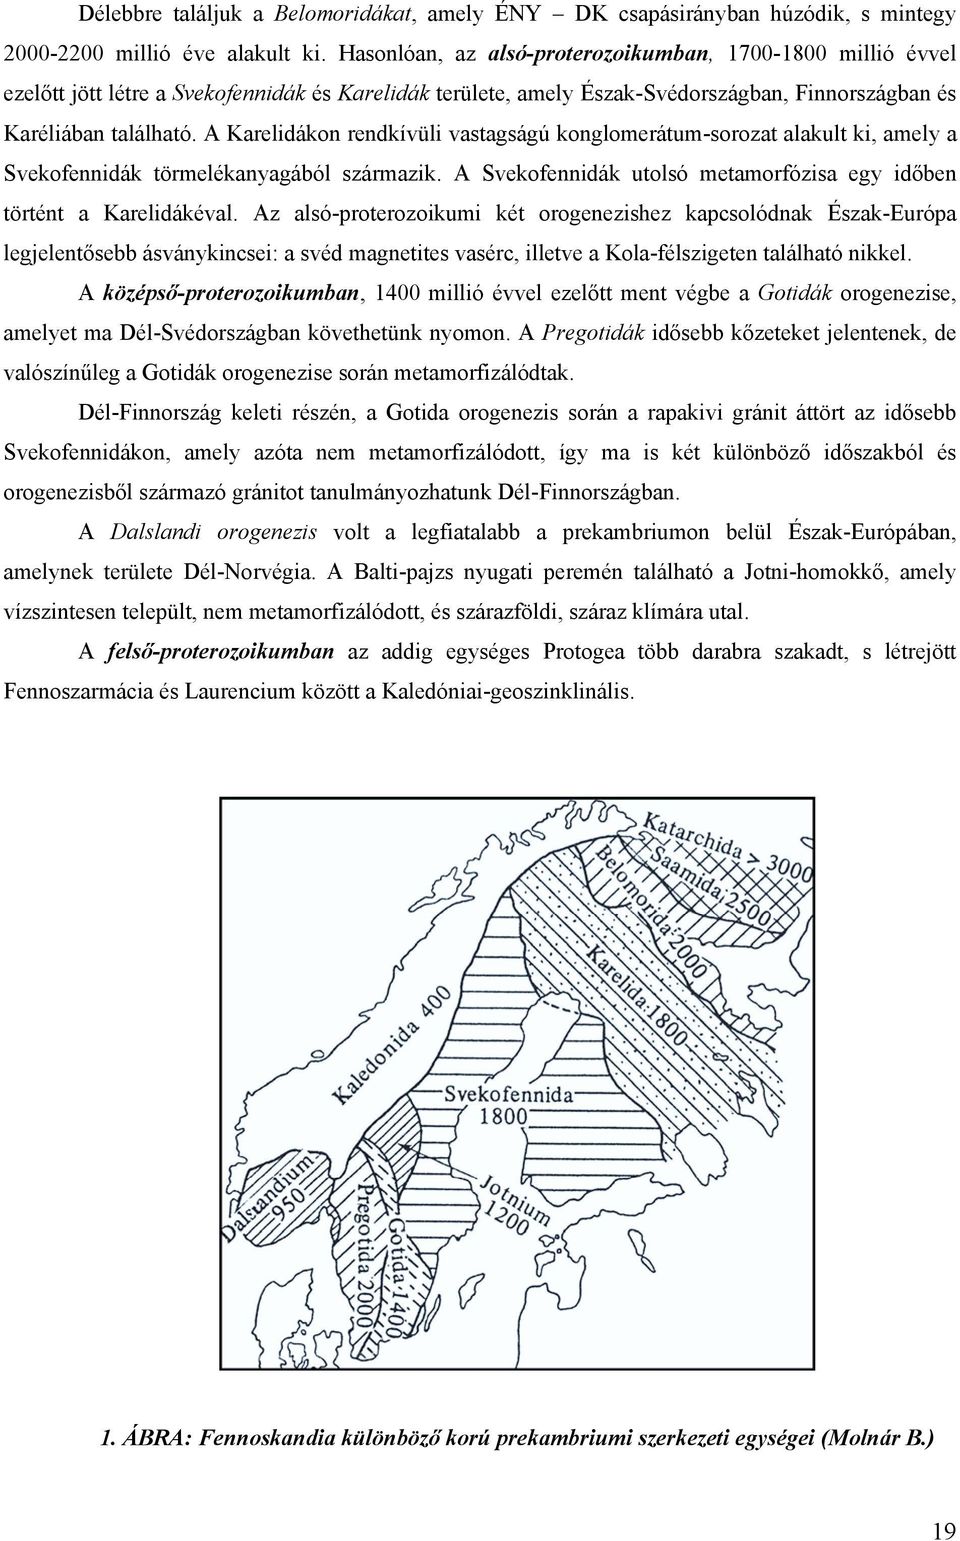 A Karelidákon rendkívüli vastagságú konglomerátum-sorozat alakult ki, amely a Svekofennidák törmelékanyagából származik. A Svekofennidák utolsó metamorfózisa egy időben történt a Karelidákéval.